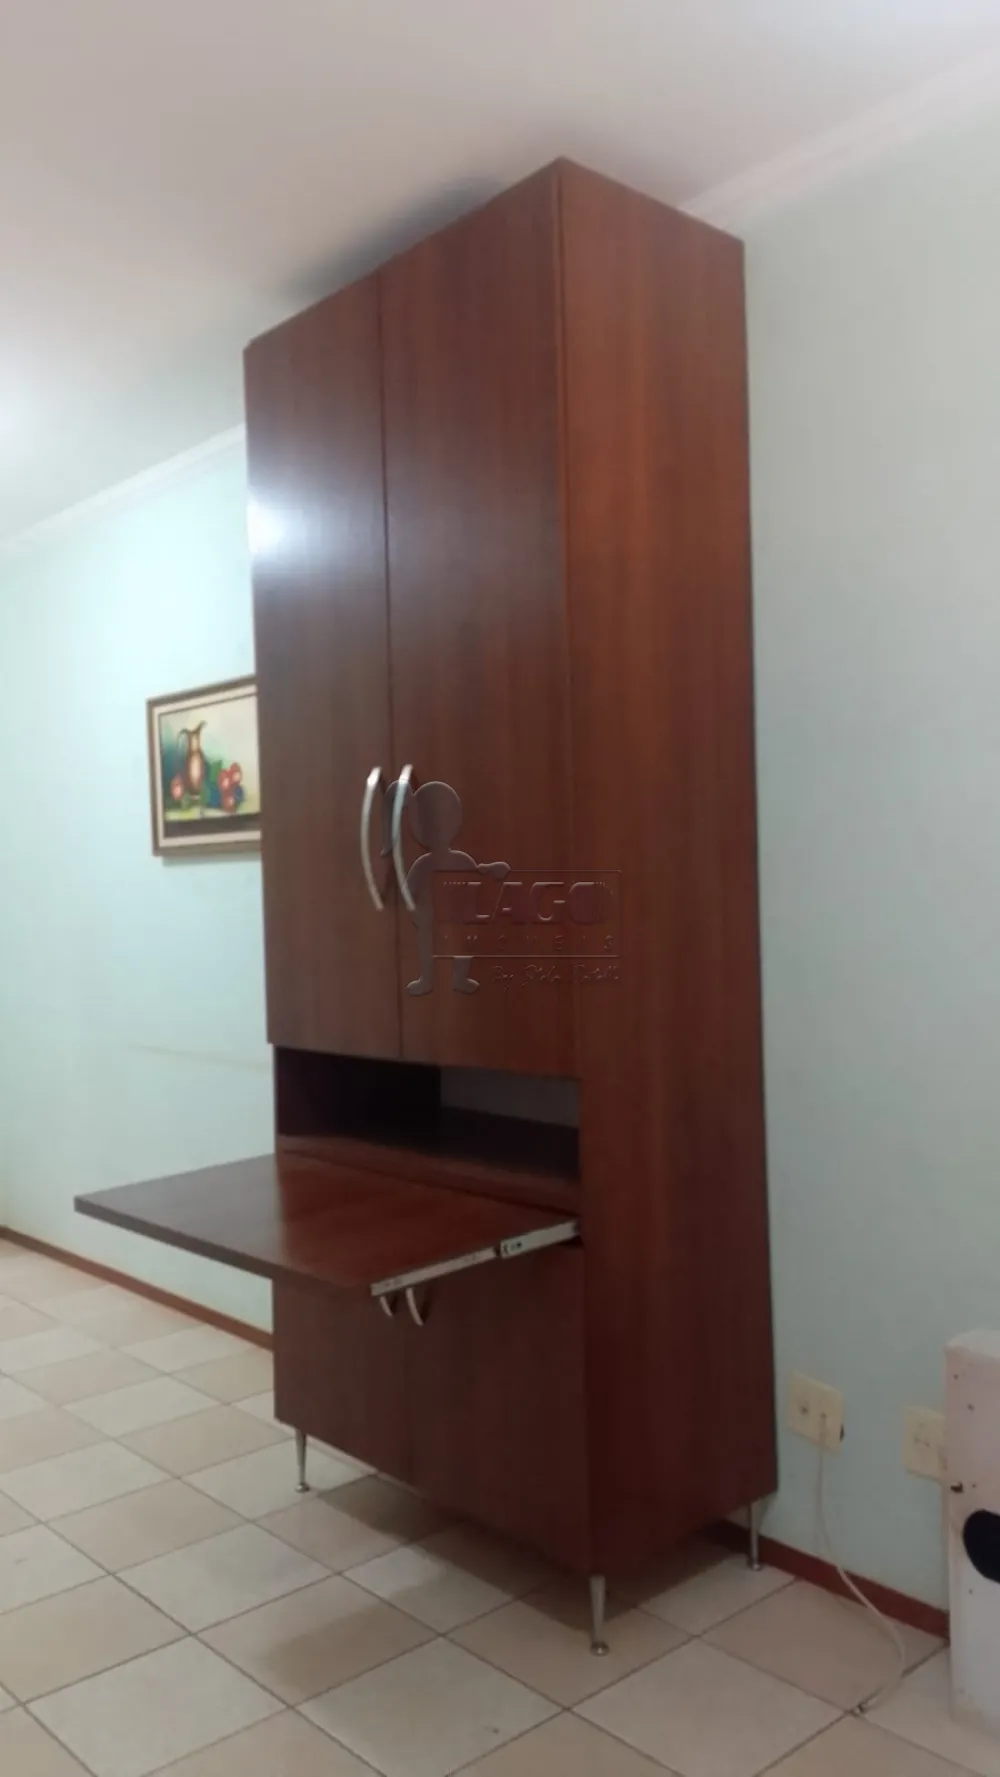 Comprar Casa condomínio / Padrão em Ribeirão Preto R$ 310.000,00 - Foto 16